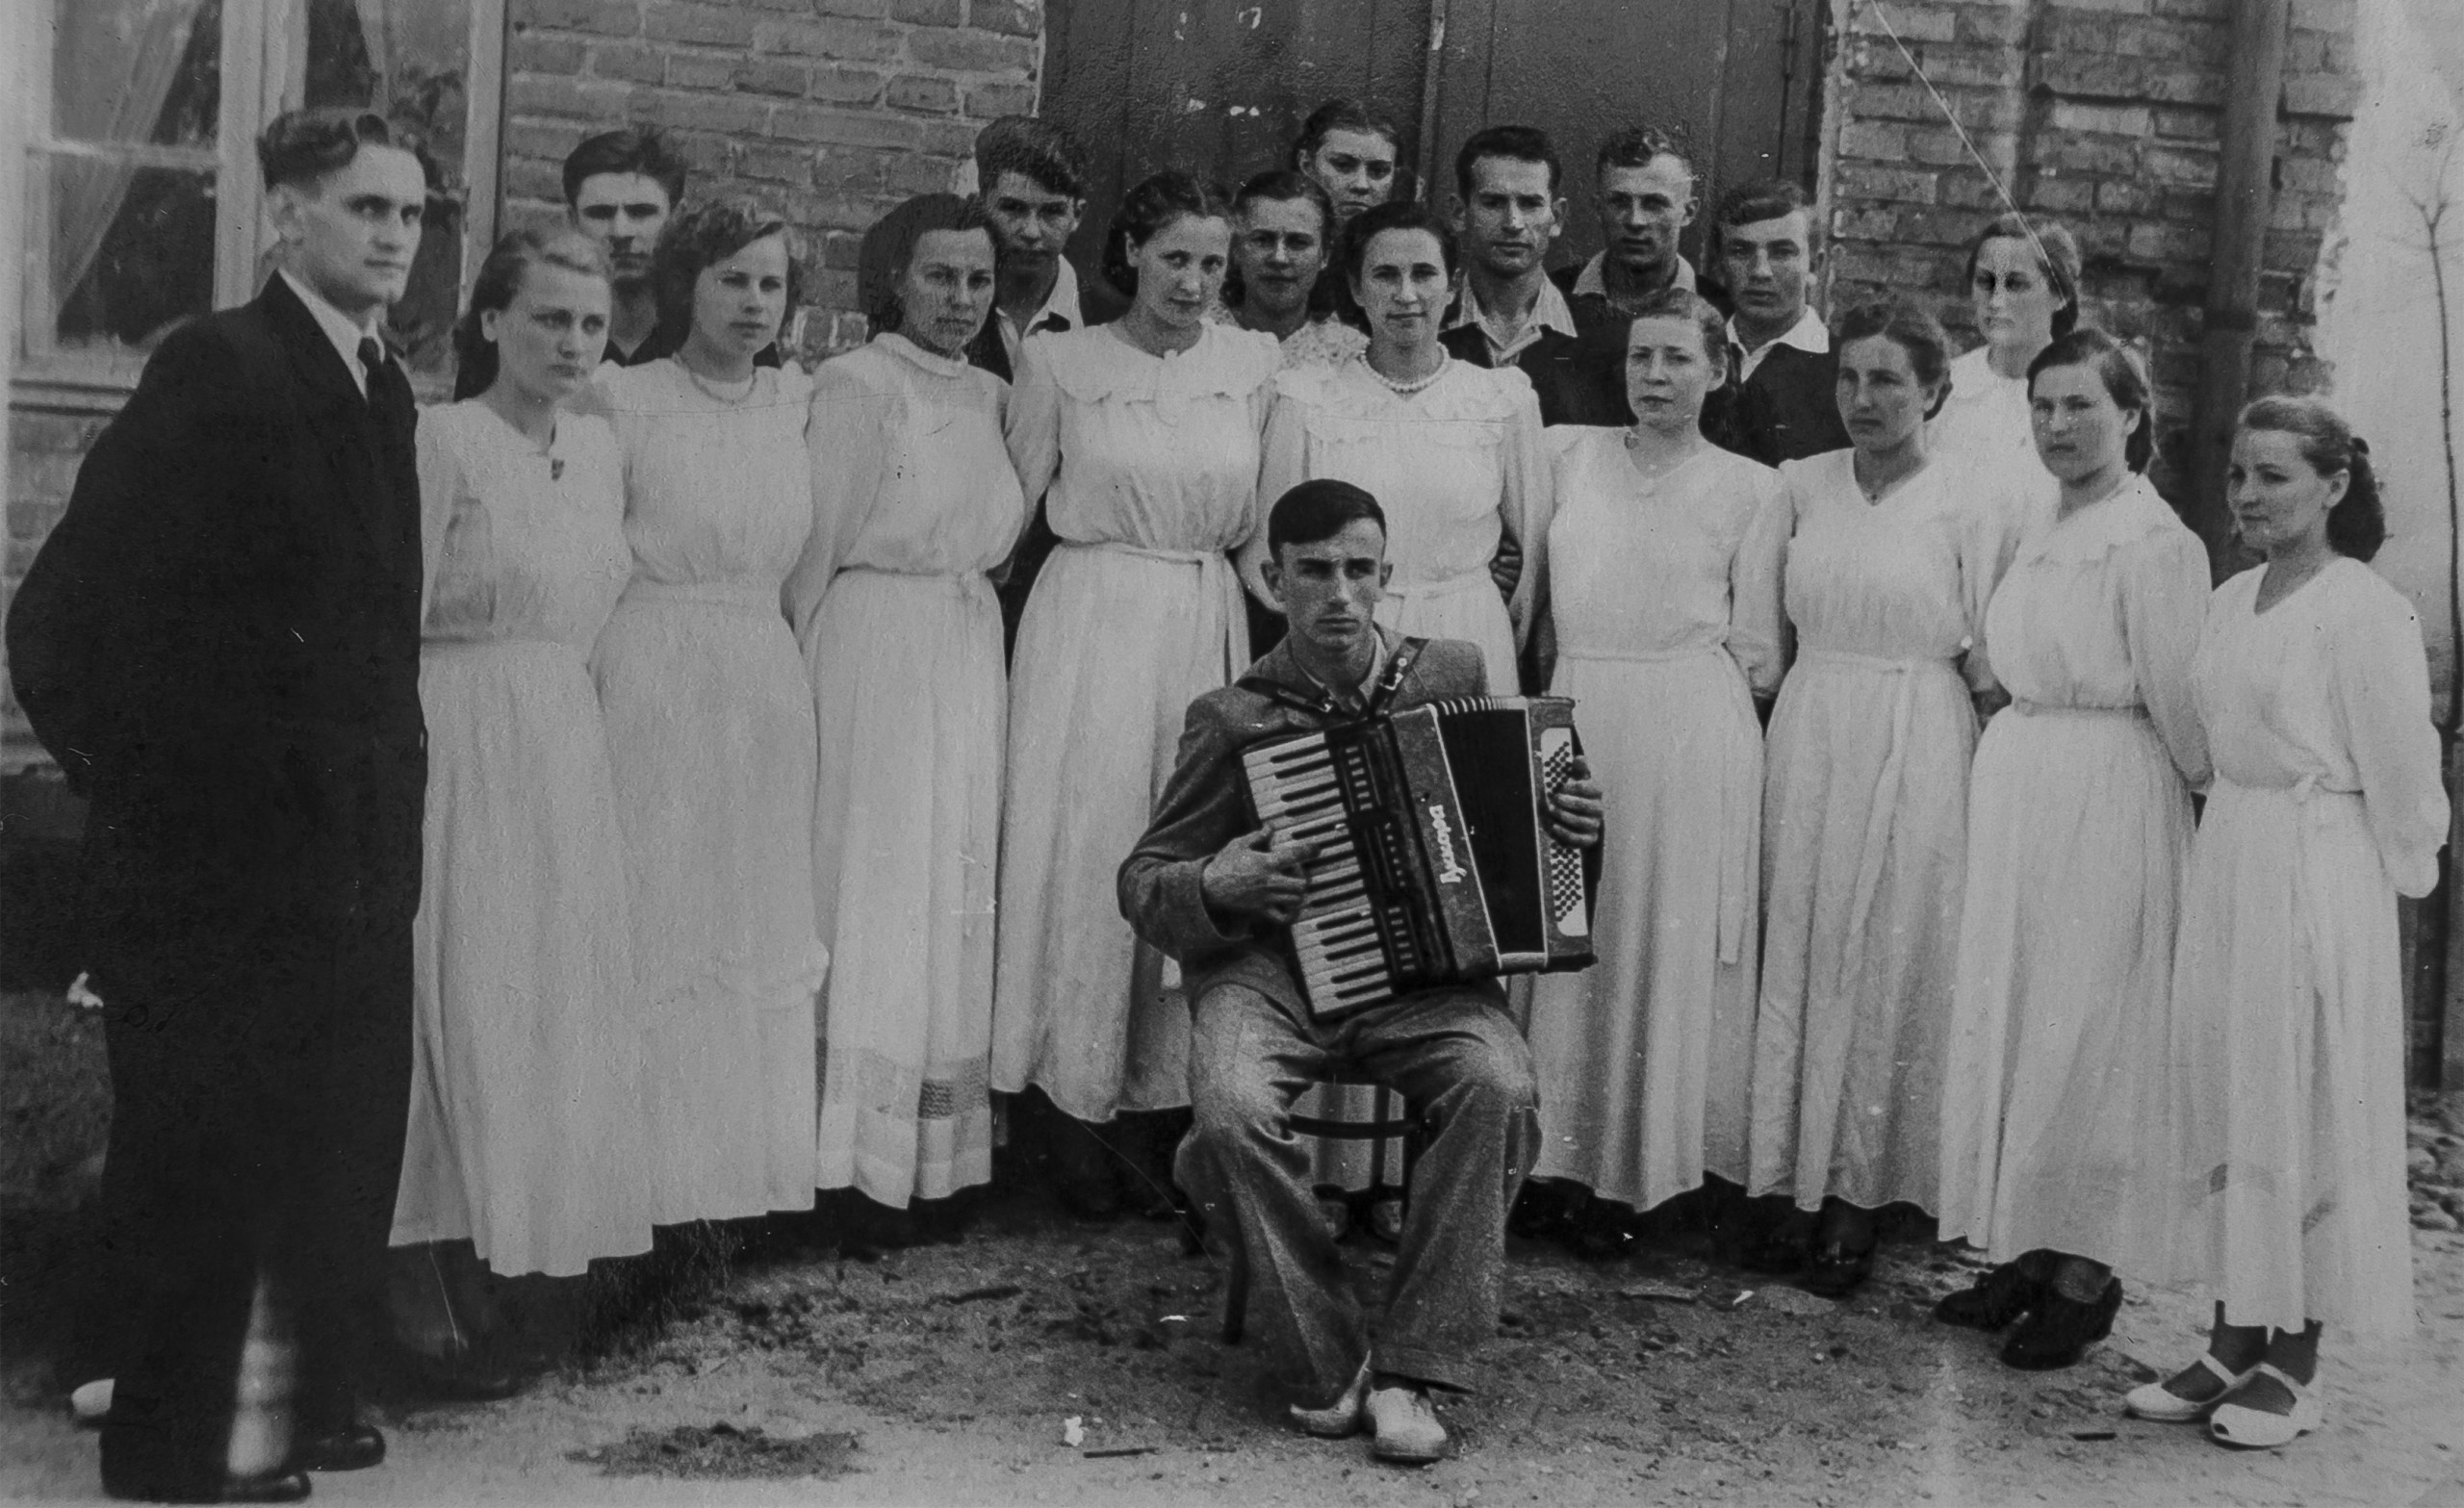 Czesław Niemen with his band, frame from ‘Sen o Warszawie’ by Krzysztof Magowski, photo: KFF